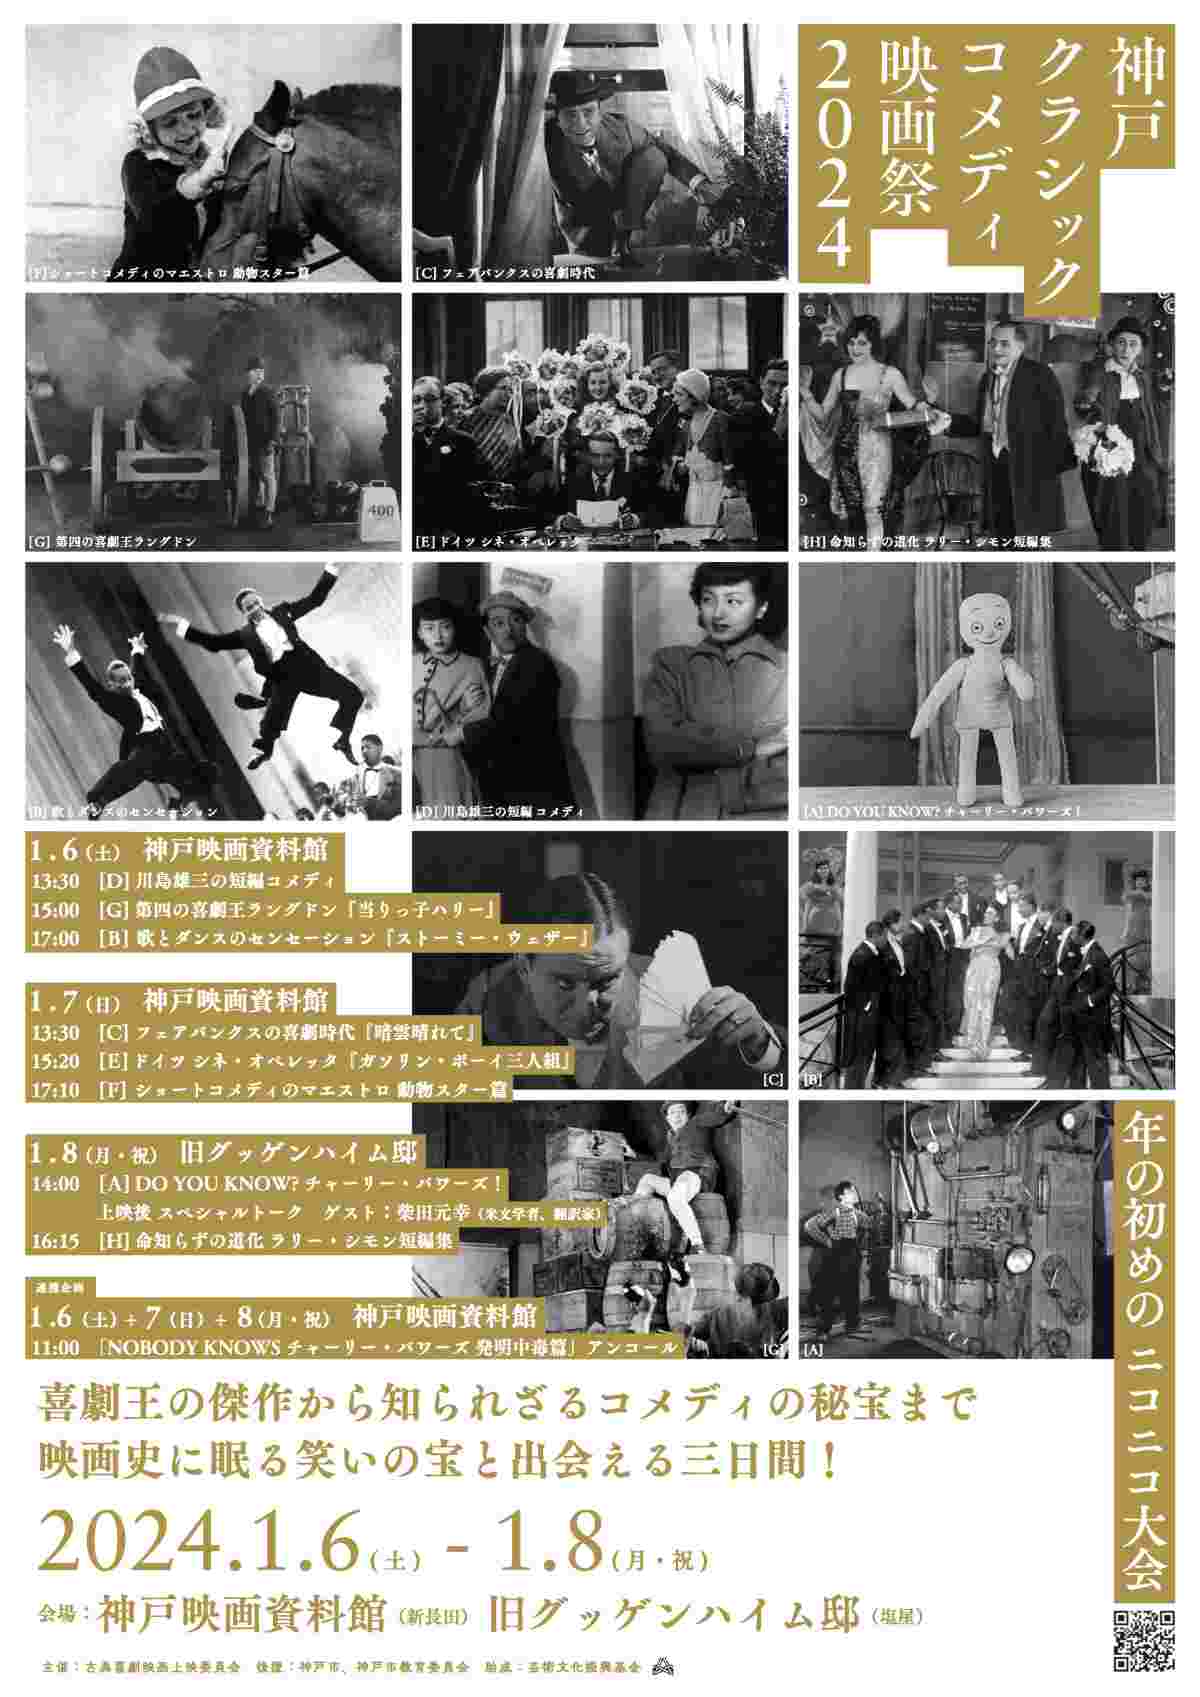 神戸映画資料館と旧グッゲンハイム邸で「神戸クラシックコメディ映画祭2024」開催　神戸市 [画像]